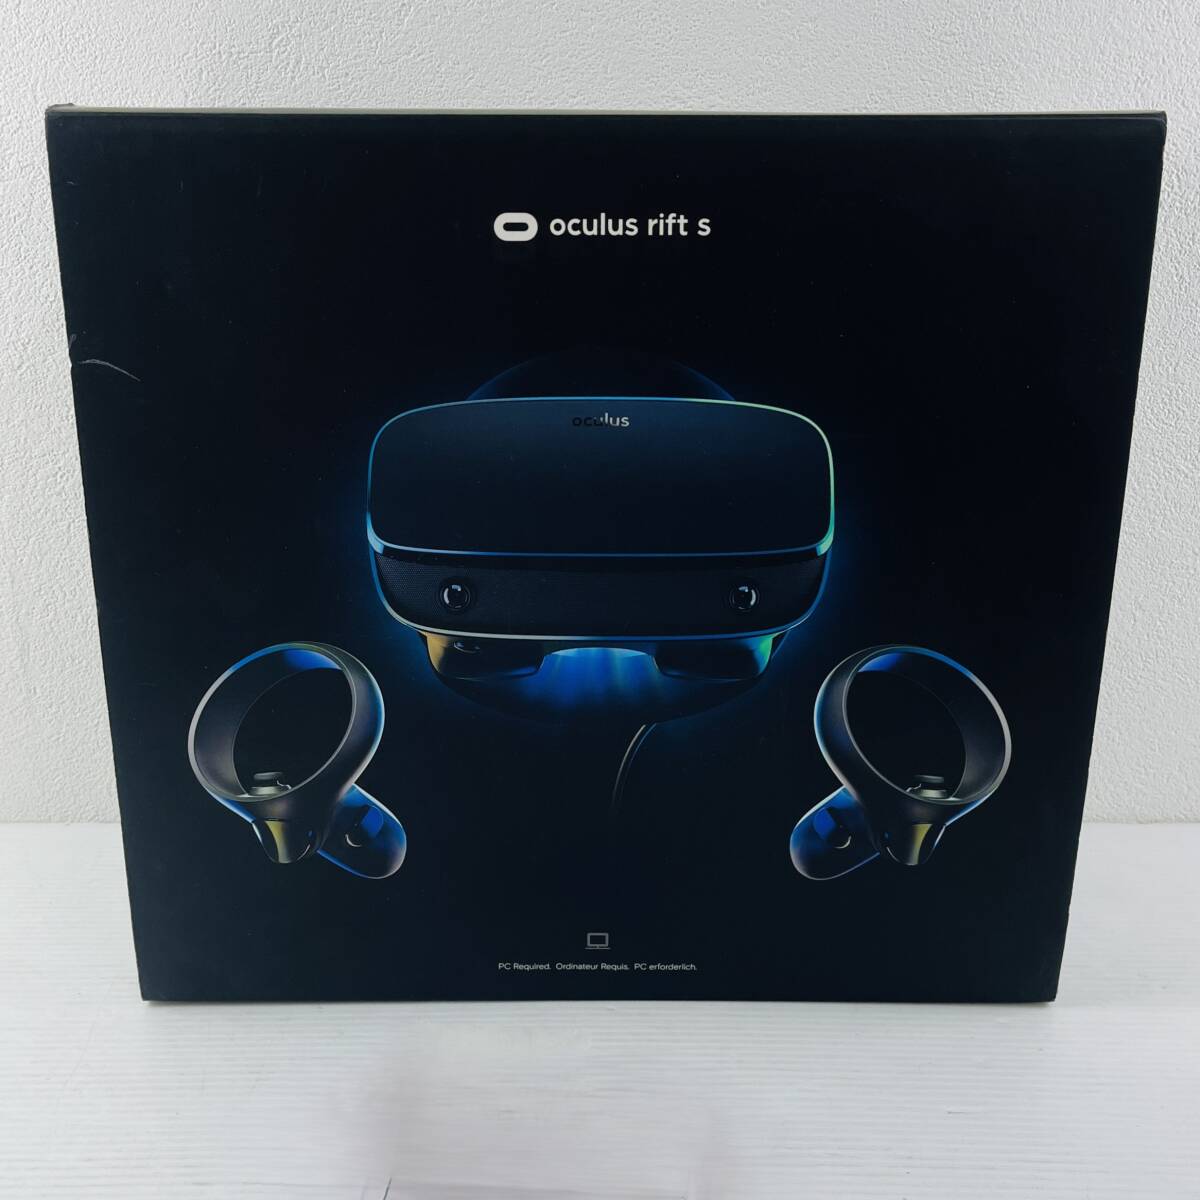 207【動作未確認】Lenovo oculus Rift S PC接続専用 高性能 VR ヘッドセット Touch コントローラー ゲーミング 説明書 ケーブル 箱付きの画像1